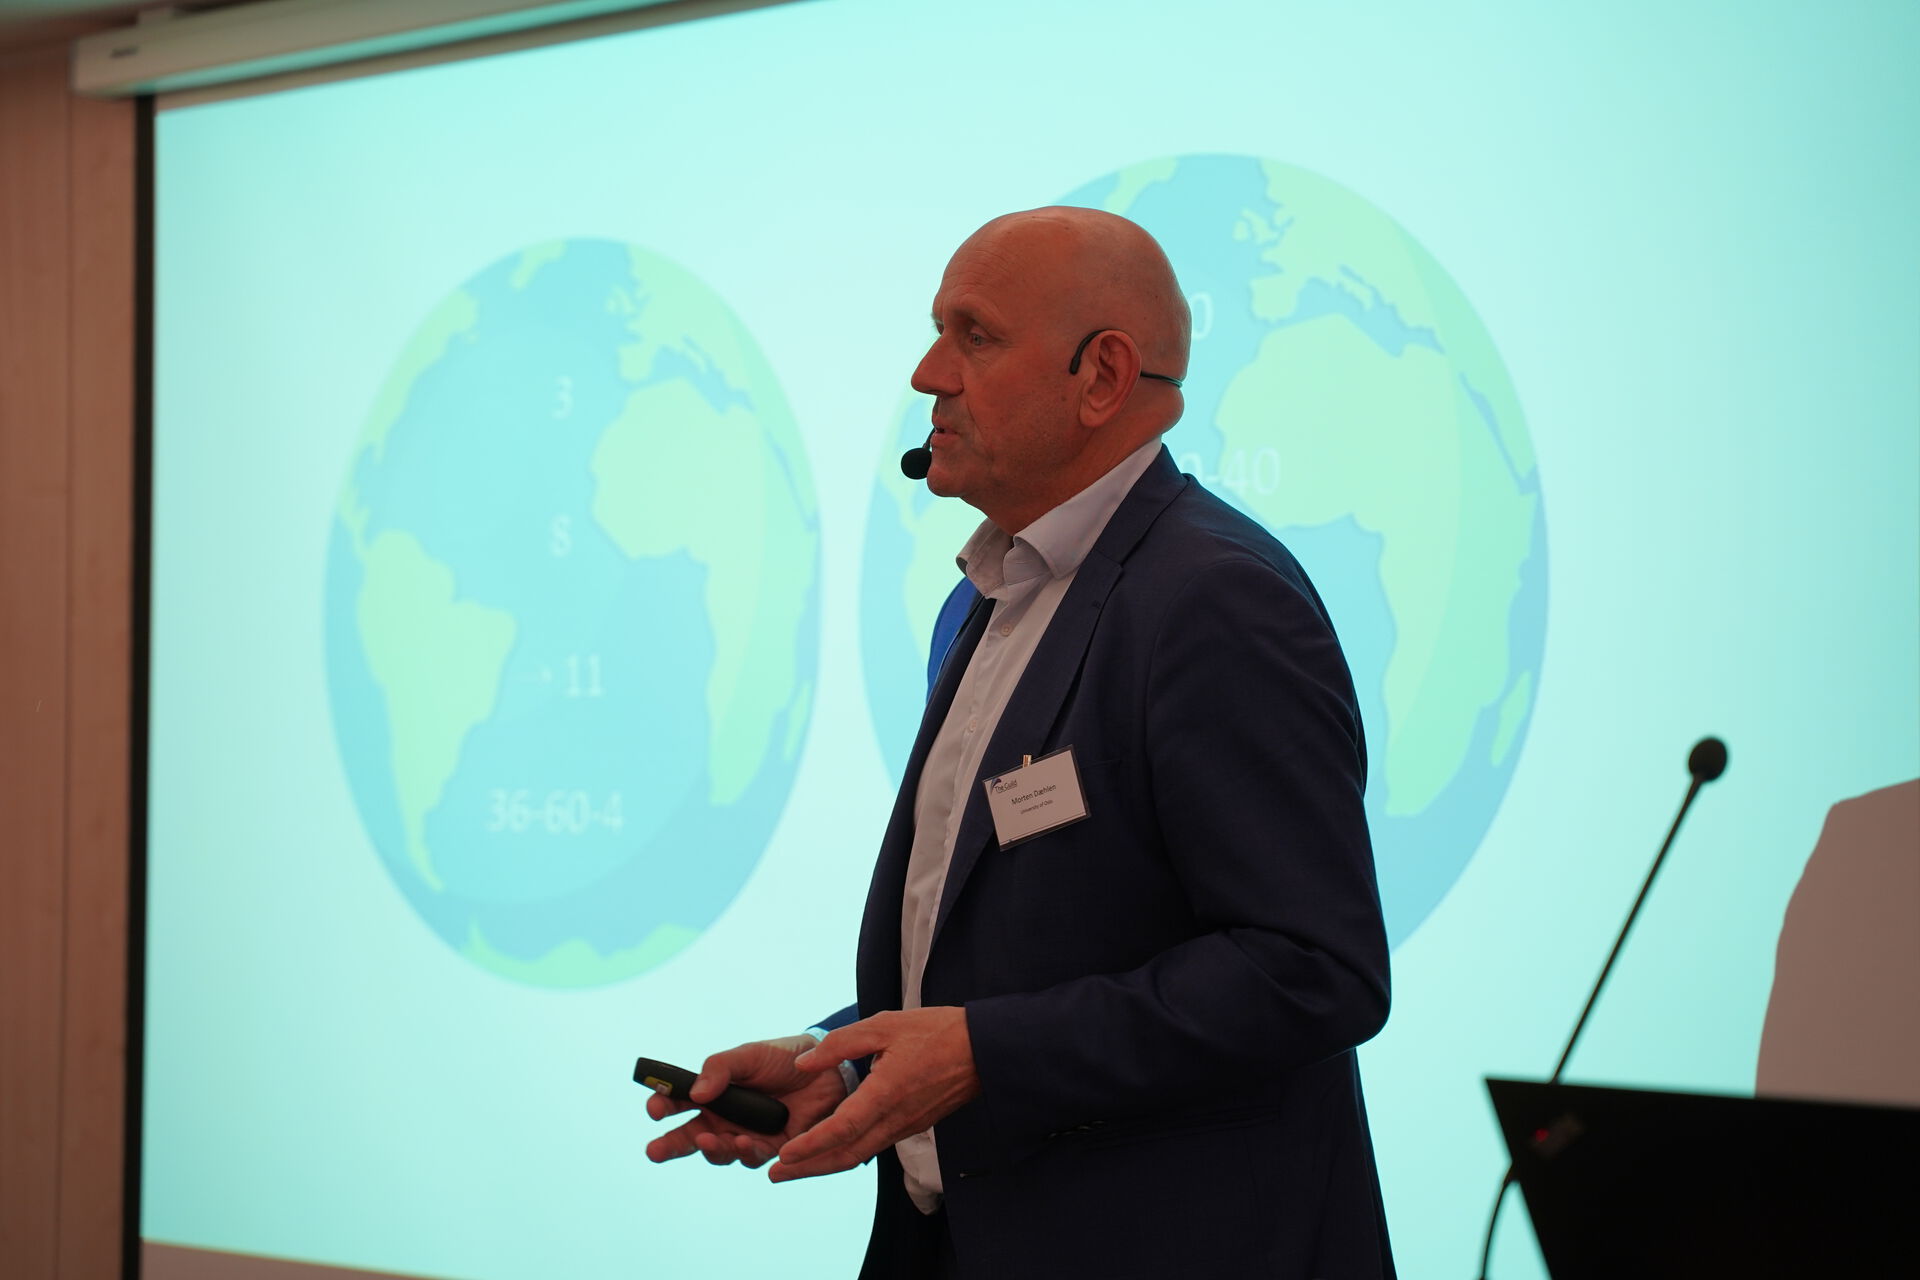 Morten Dæhlen presented the Insight Paper